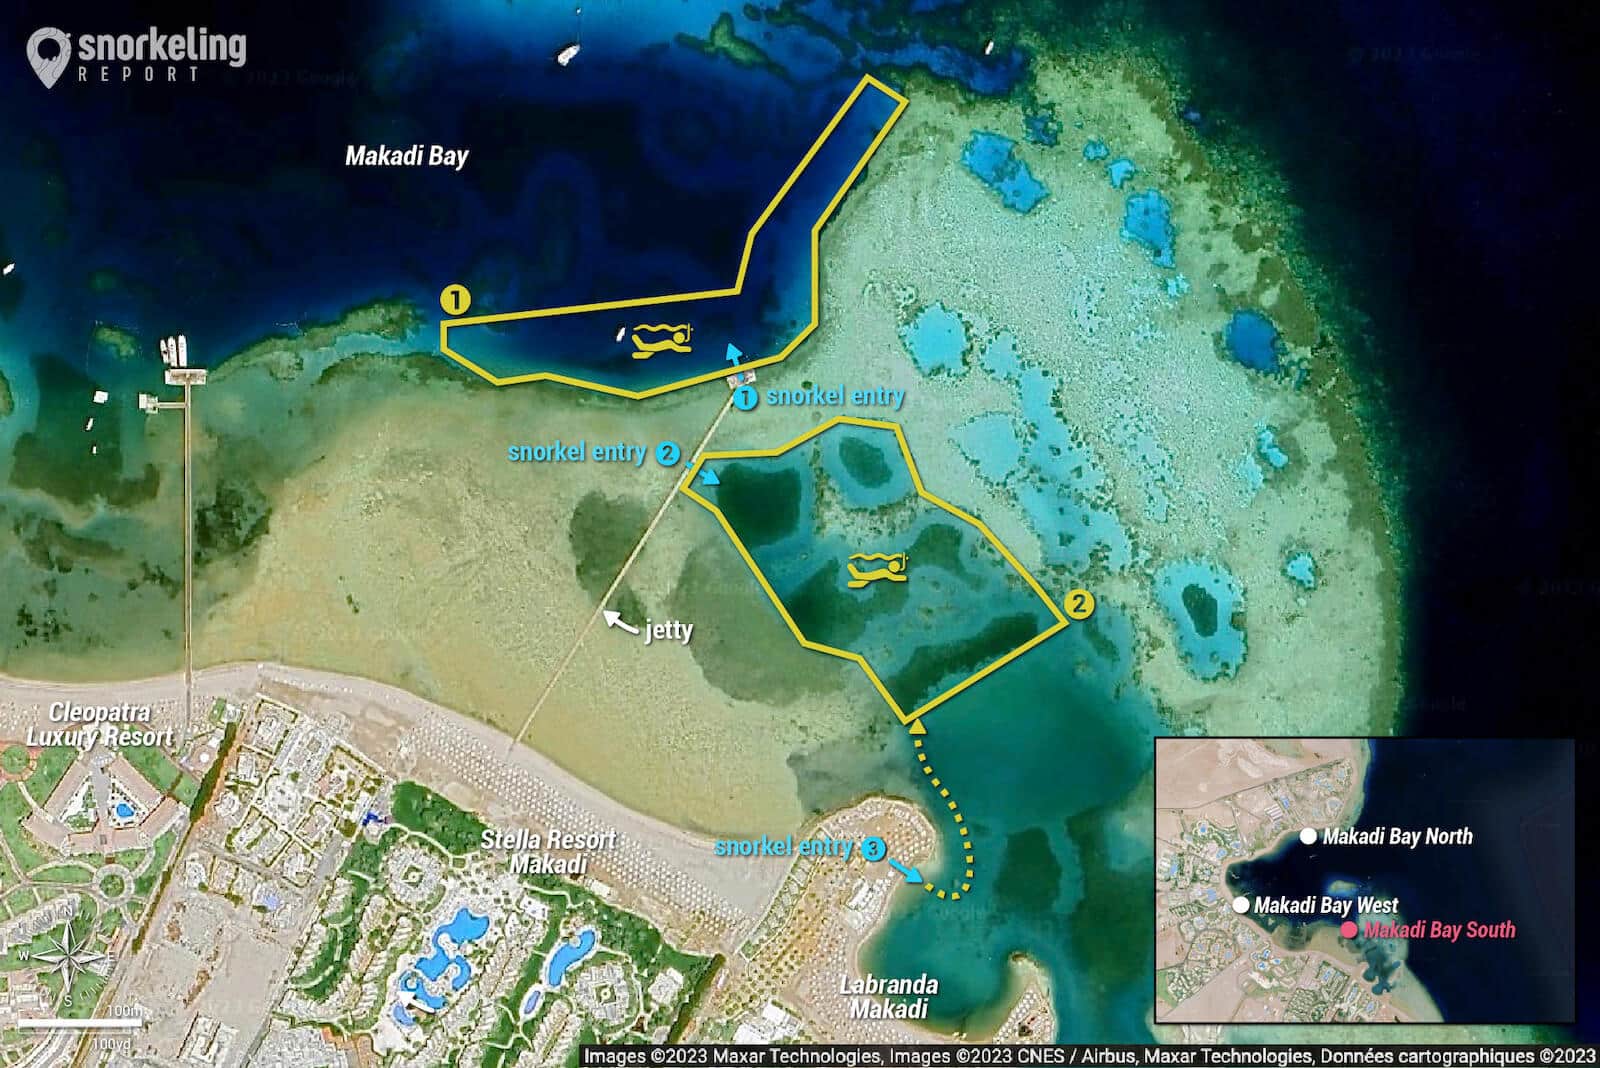 Makadi Bay South snorkeling map